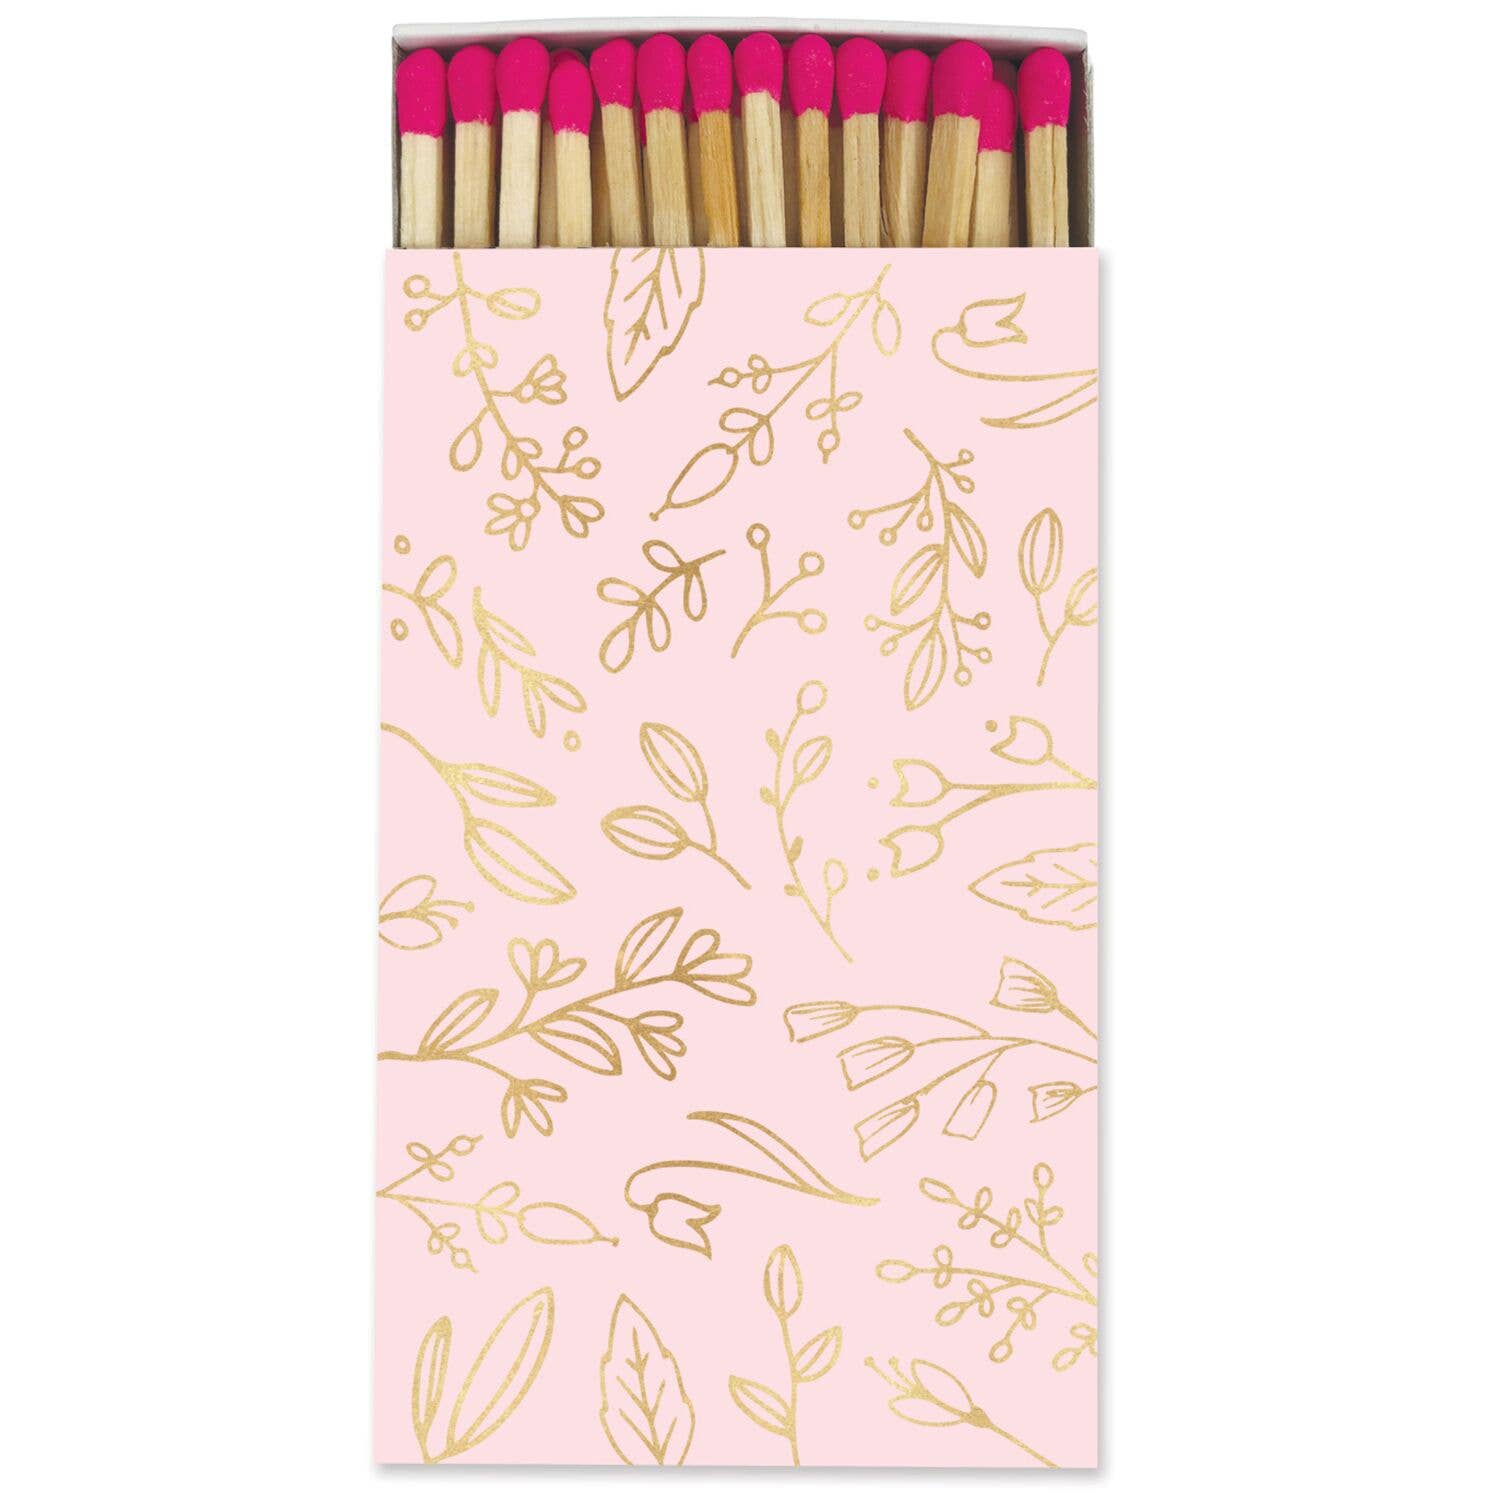 Frankie & Claude – Large Match Box: Pastel Pink & Gold Foil Floral